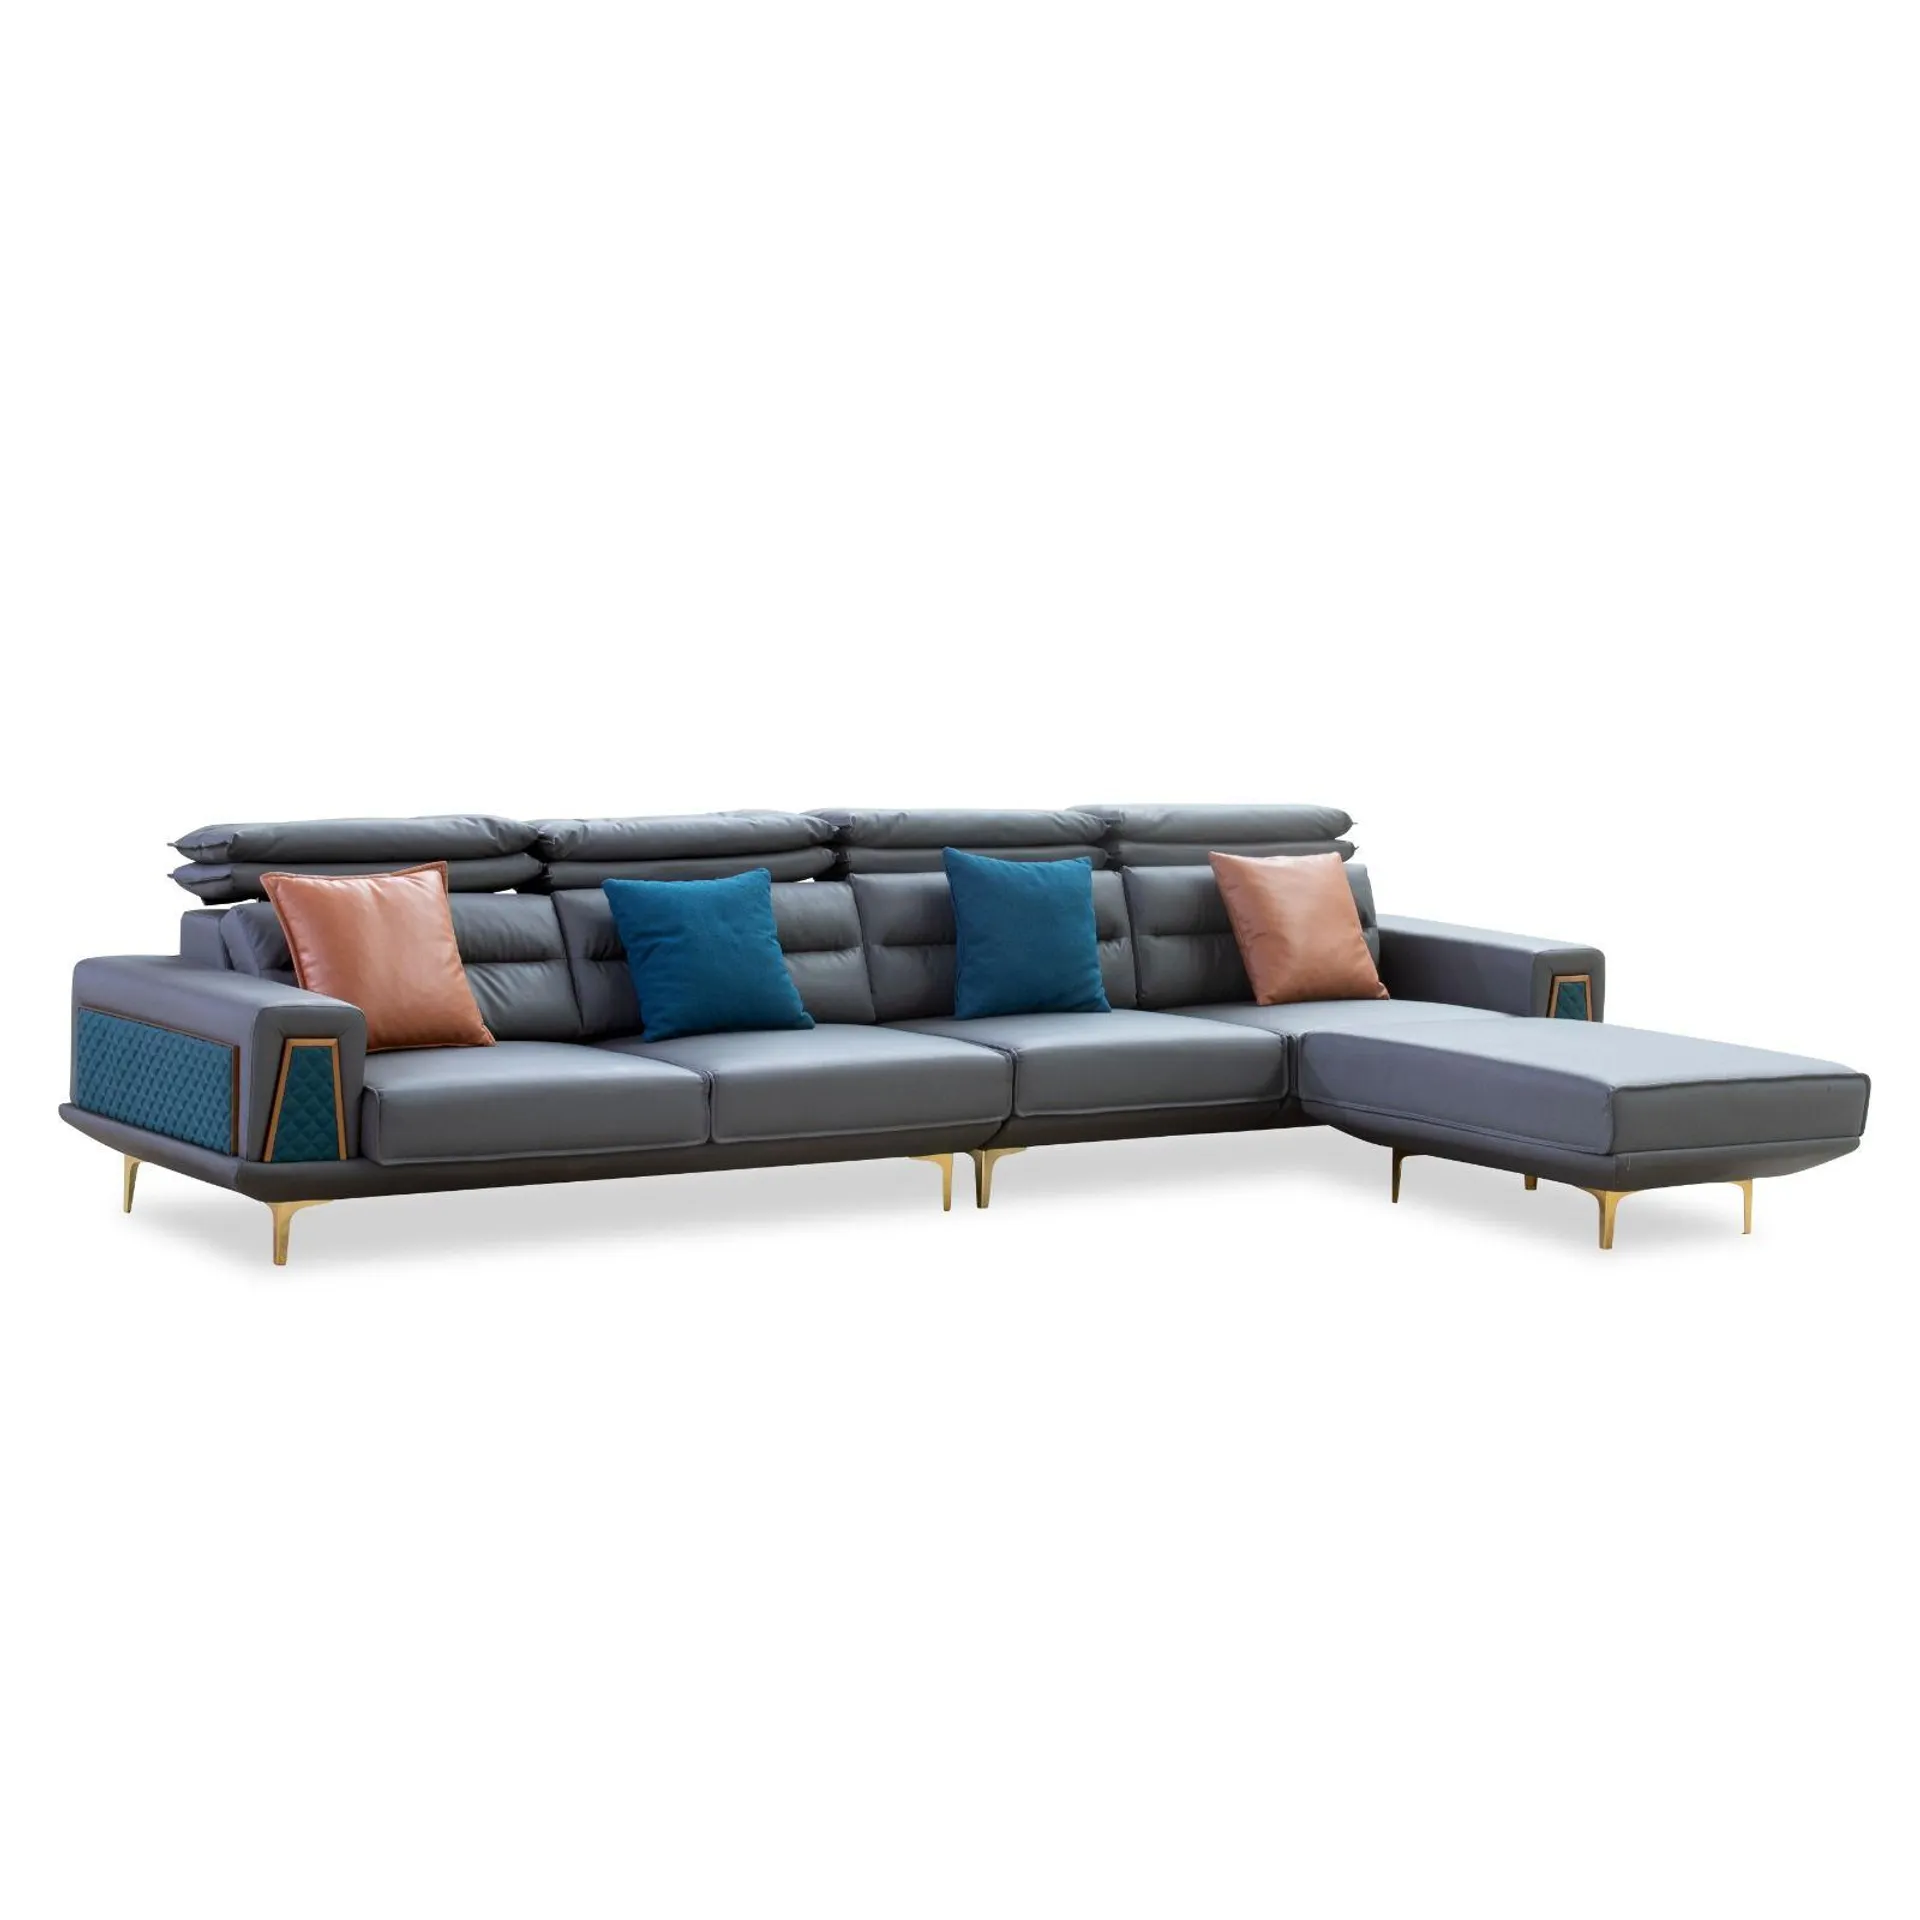 GOF Furniture - Ratu Couch